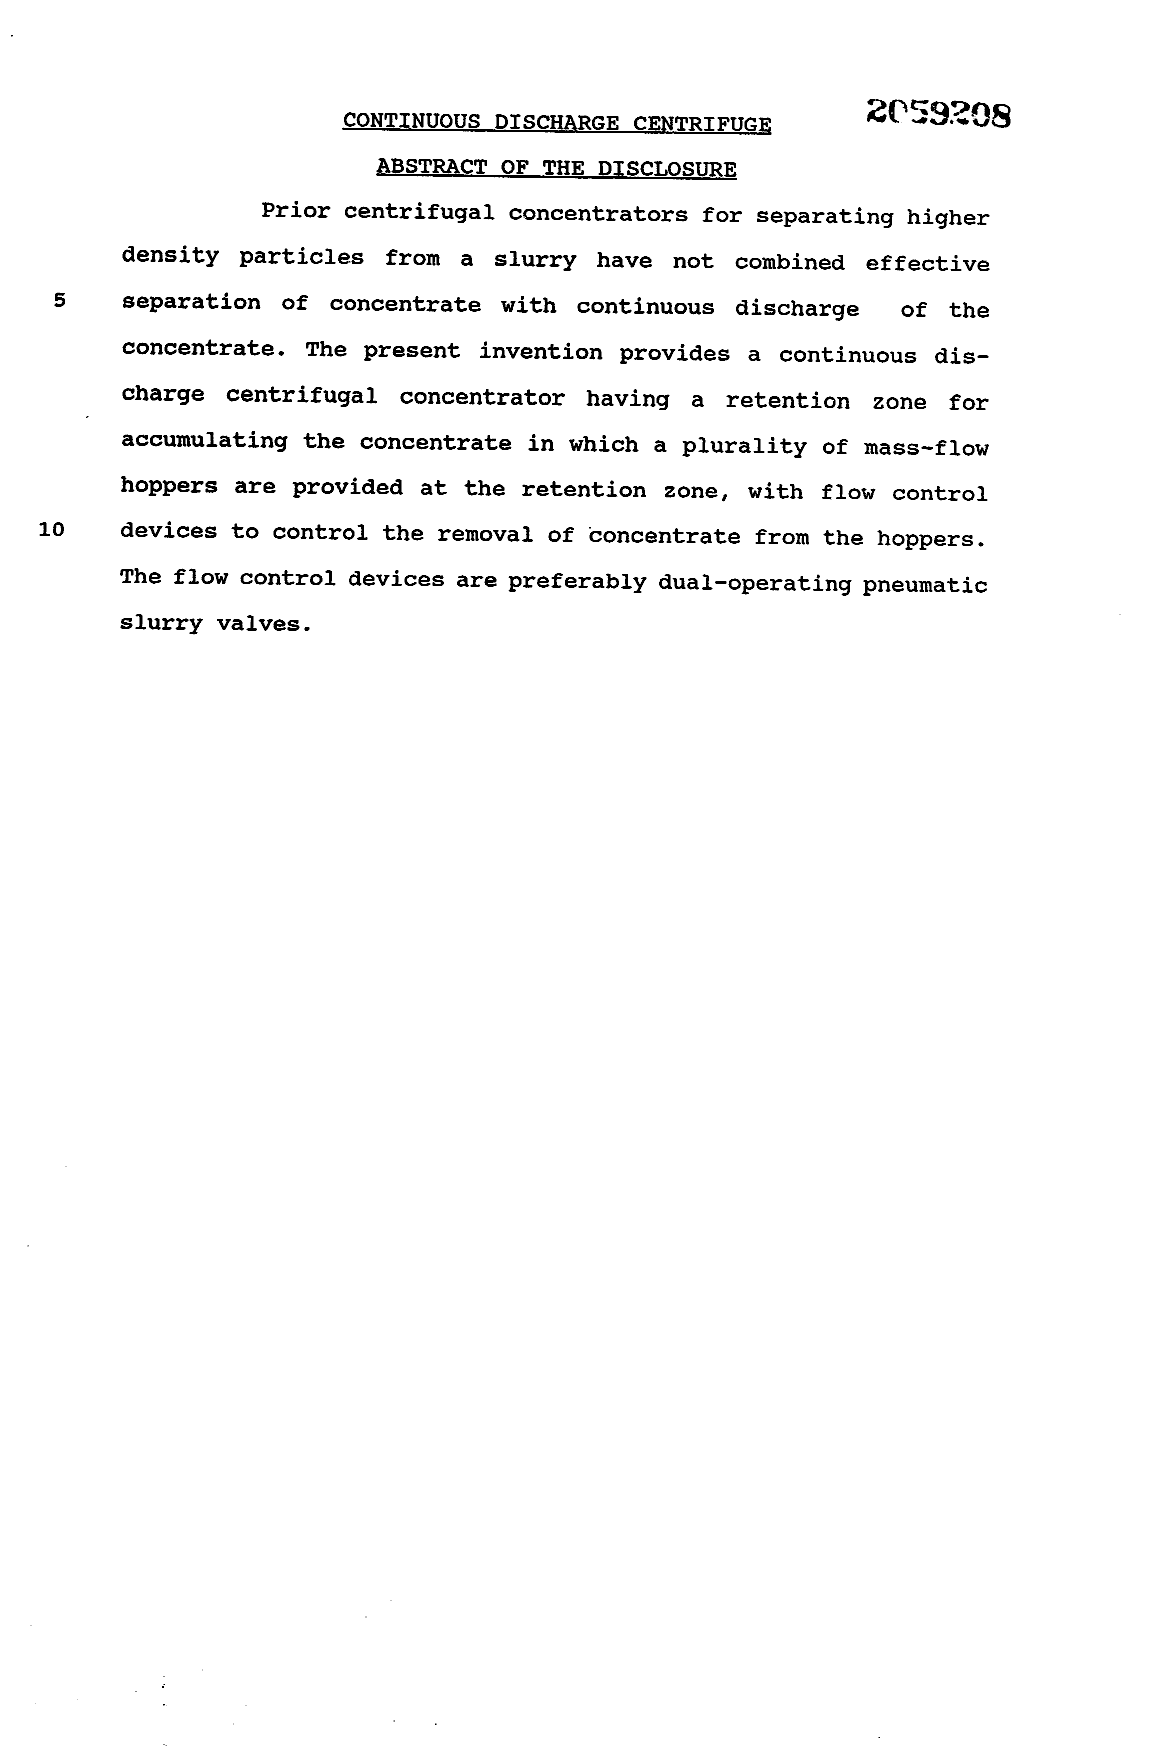 Document de brevet canadien 2059208. Abrégé 19931213. Image 1 de 1